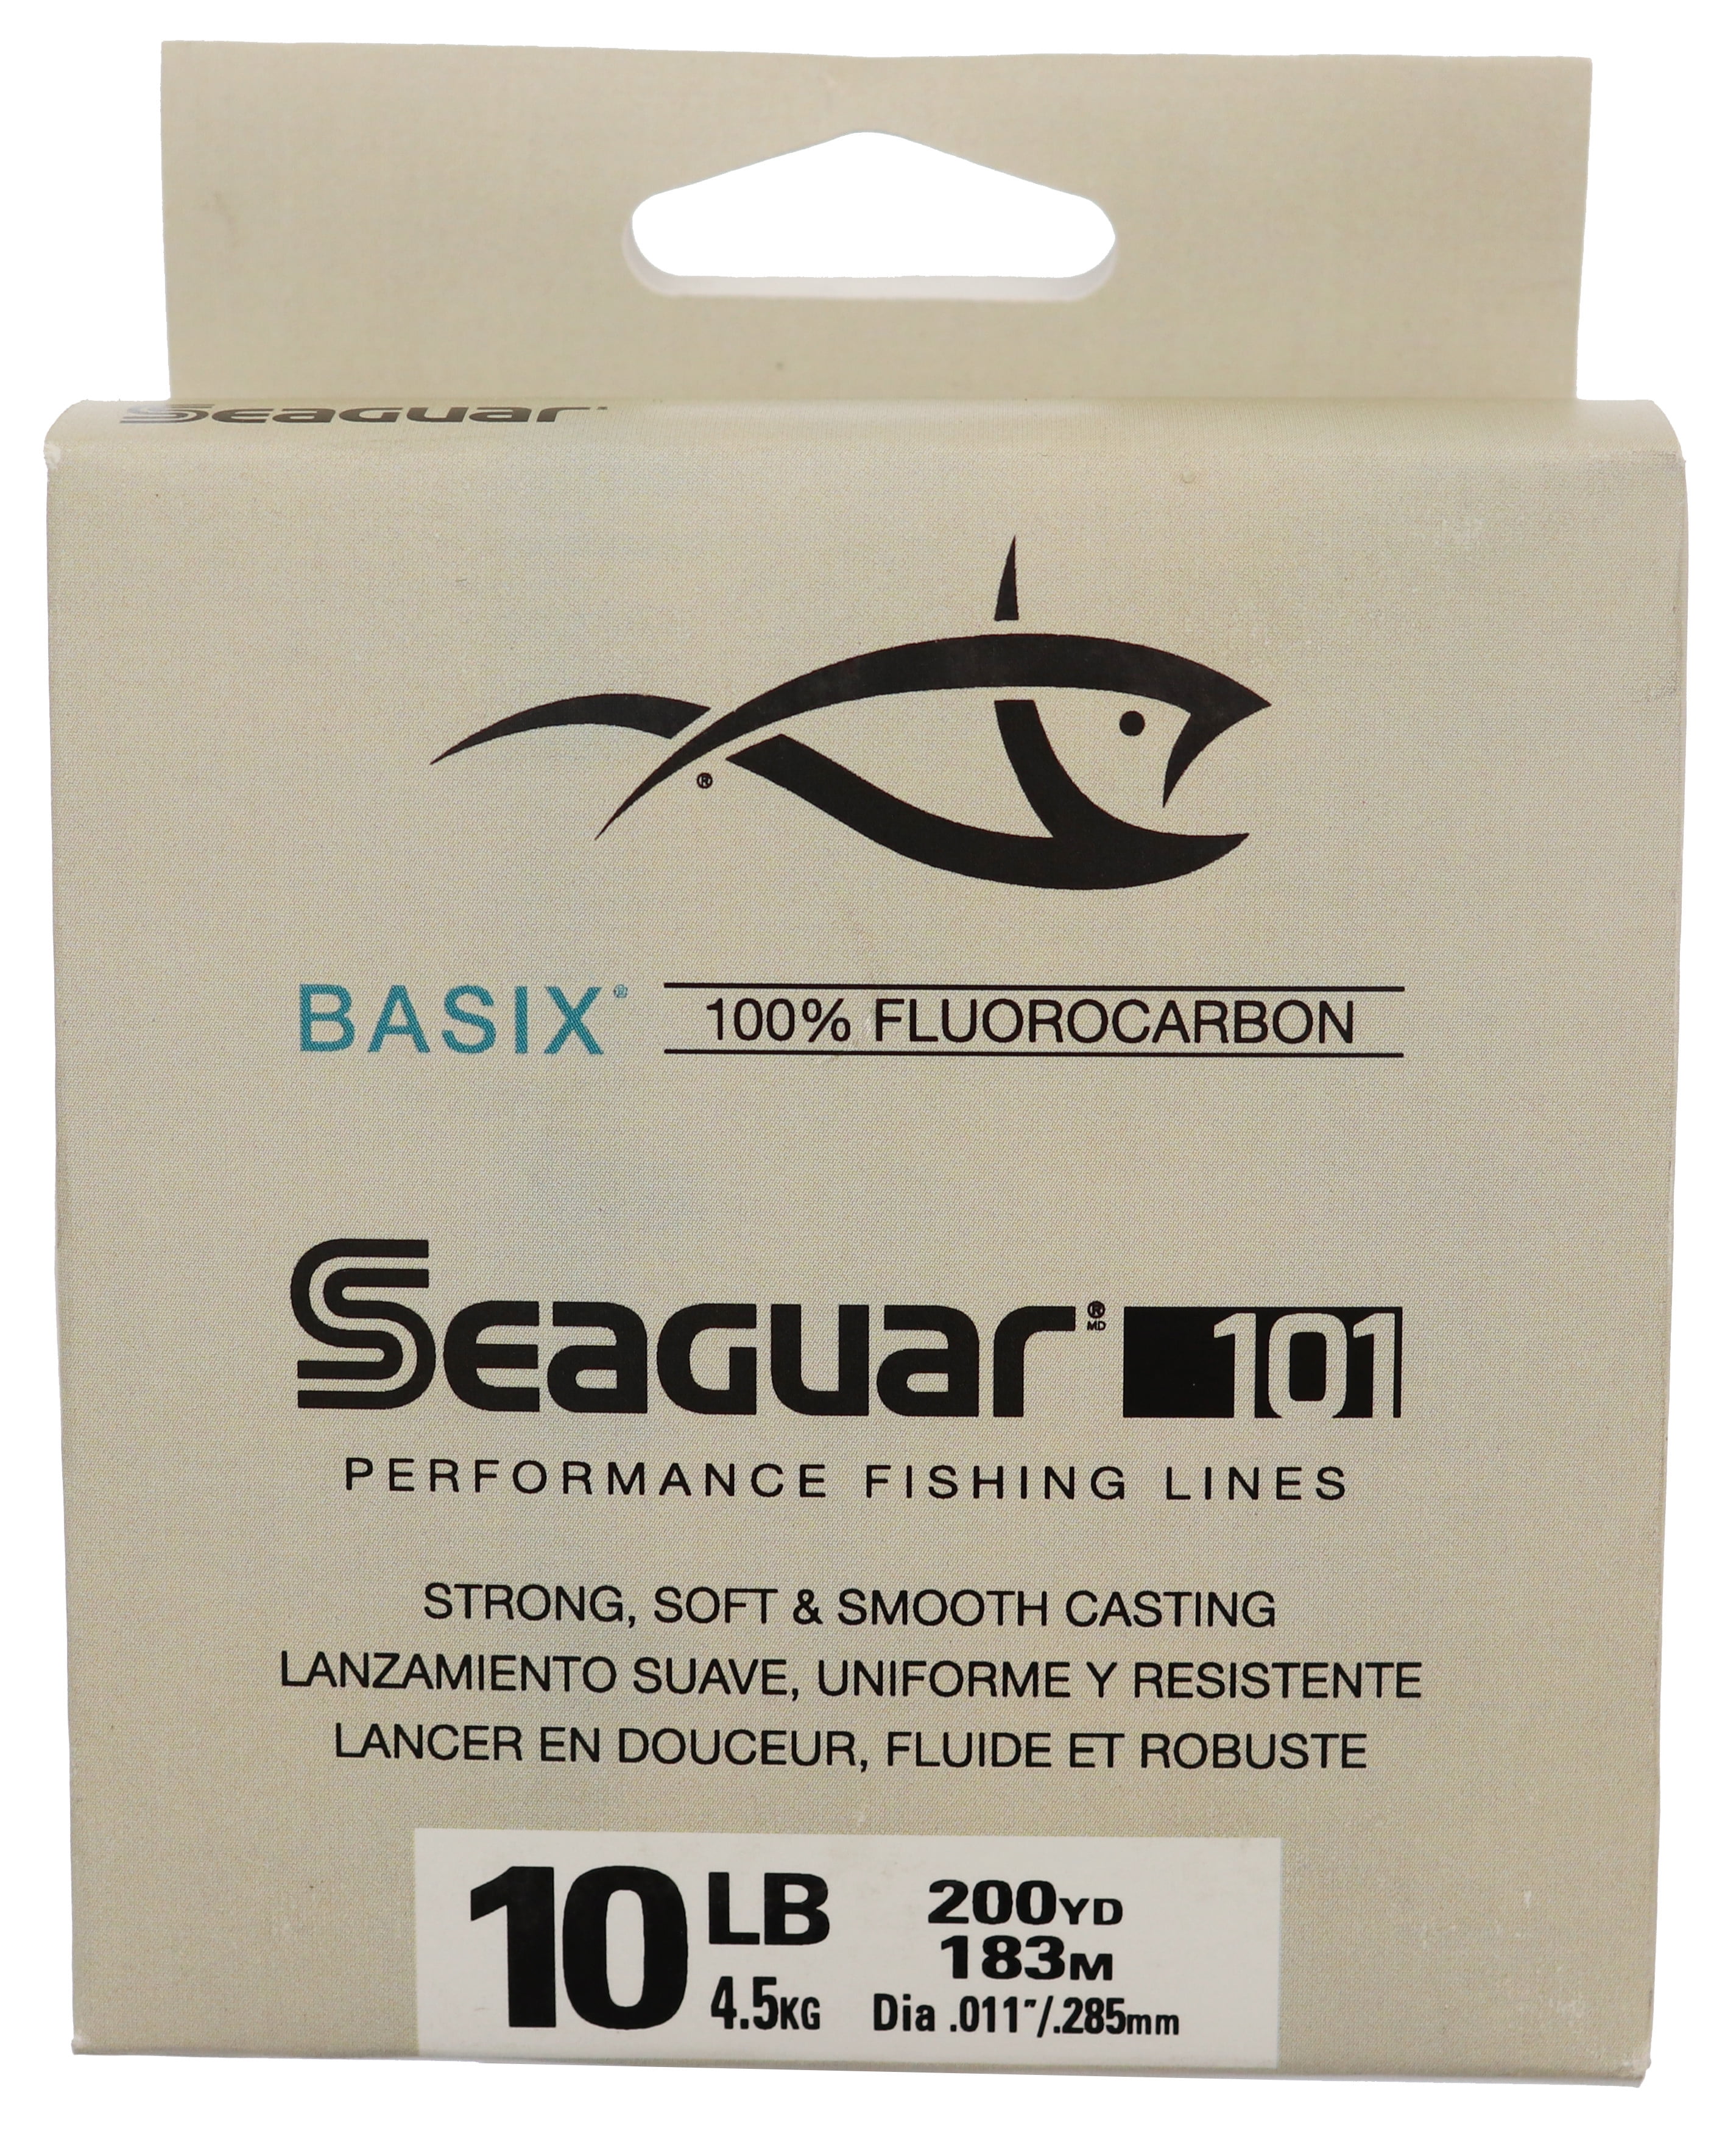 Seaguar Invizx 100 Fluorocarbon Line 200yd Yards 20 LB for sale online 